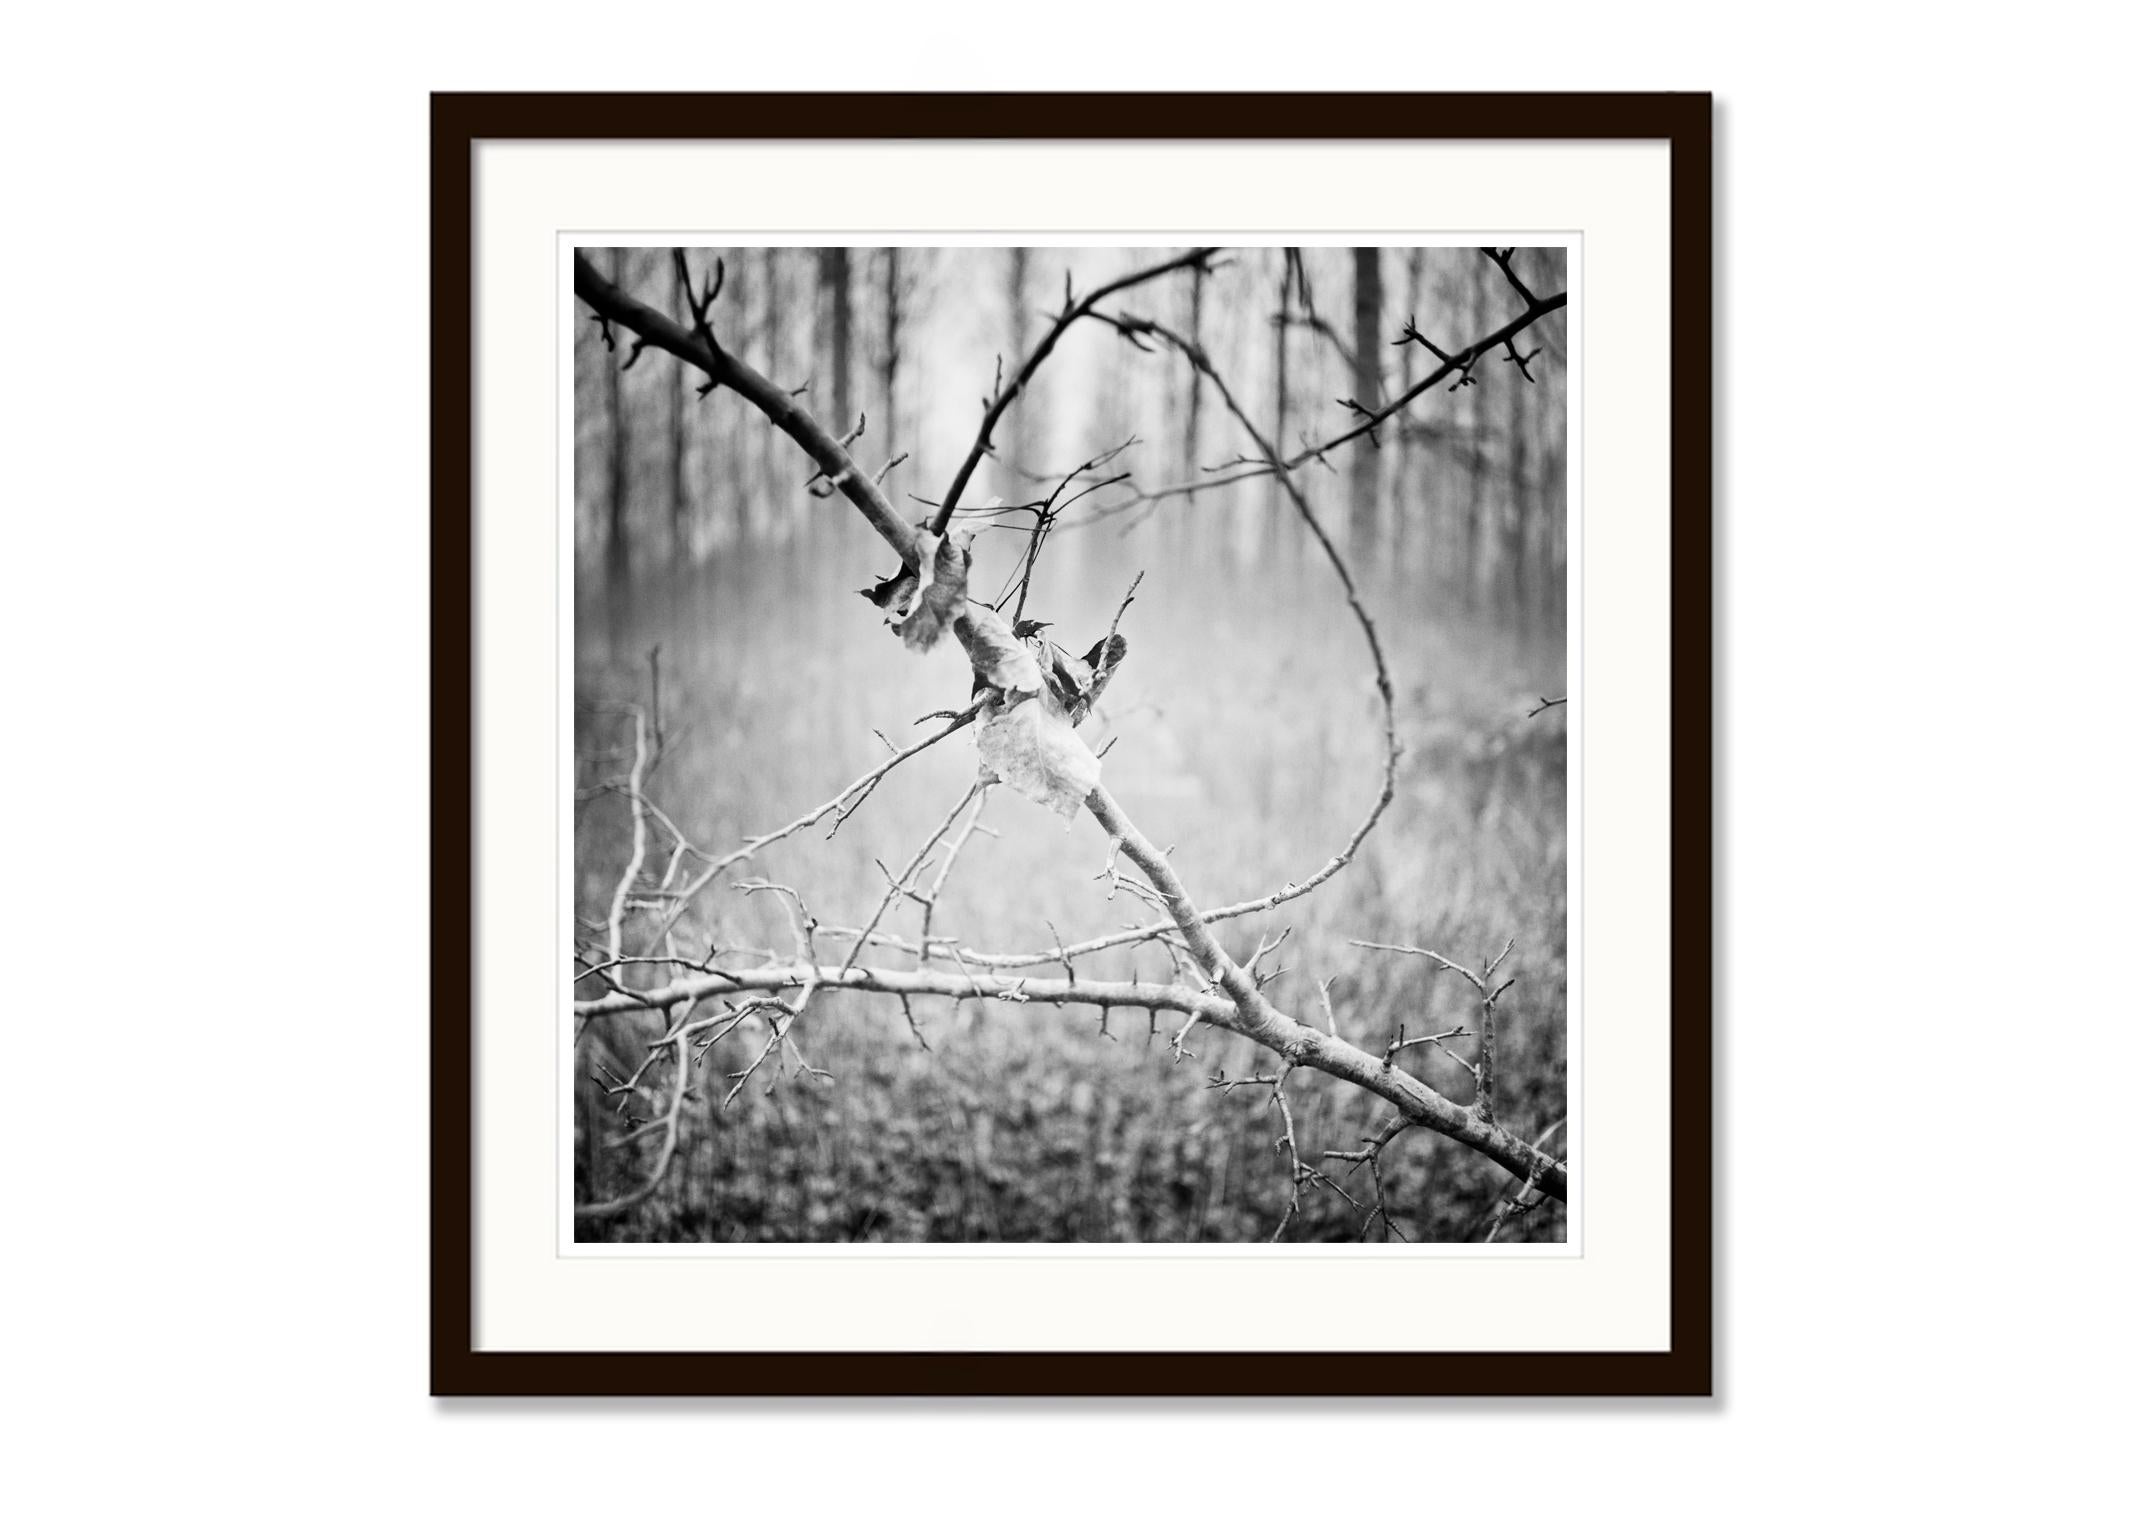 SILVERFINEART - Photographie de paysages en noir et blanc. Edition limitée à 9 exemplaires, réalisée à partir du film négatif noir et blanc de format moyen 6x6cm et imprimée à l'encre pigmentaire sur papier d'art. Signé à la main, titré, date du